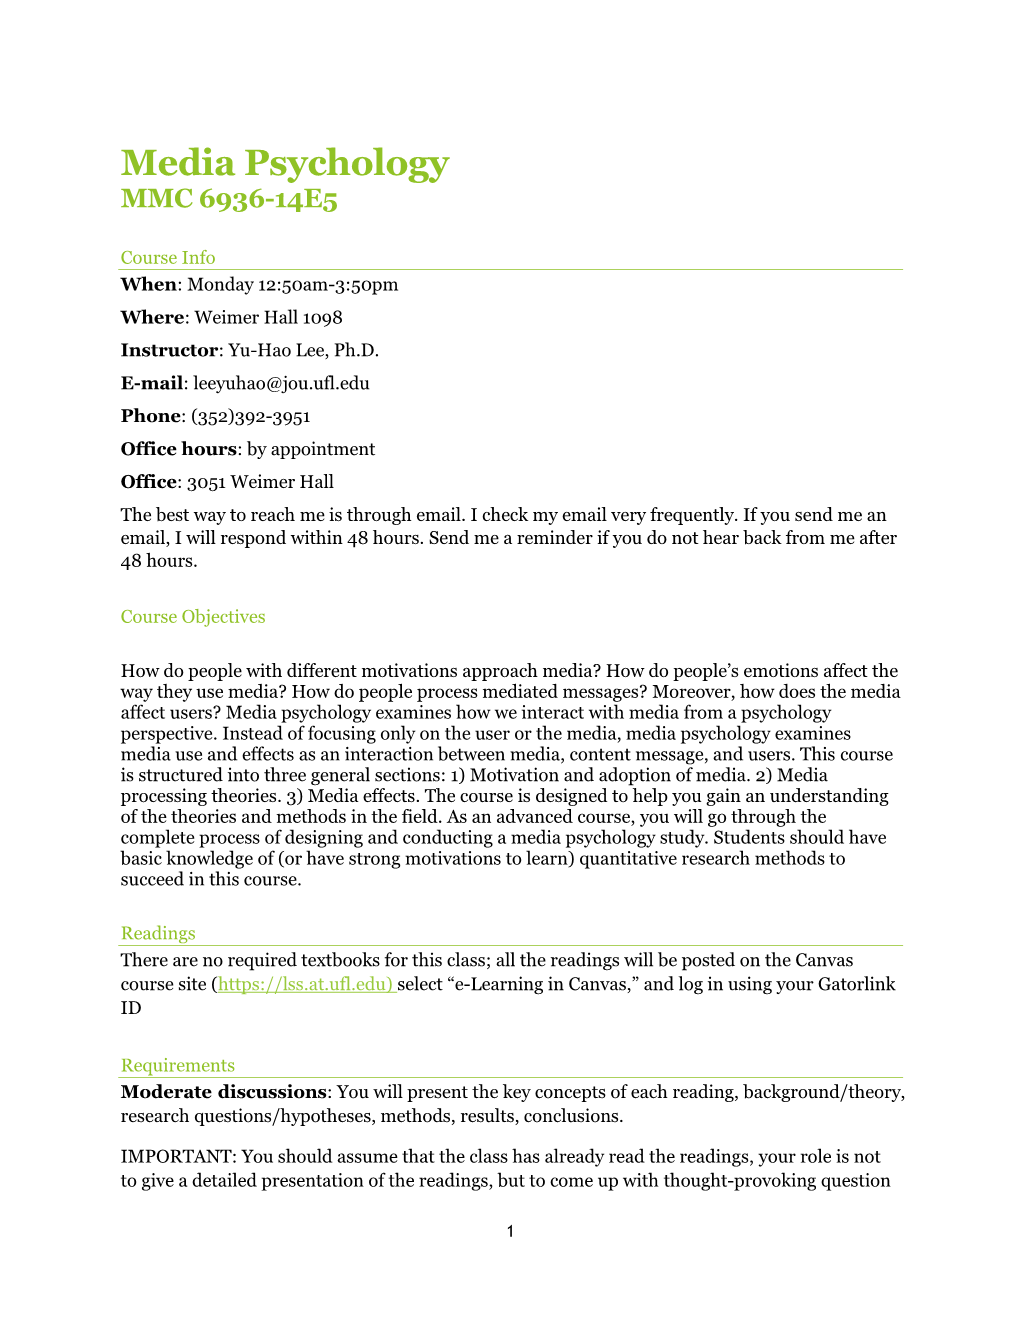 Media Psychology MMC 6936-14E5